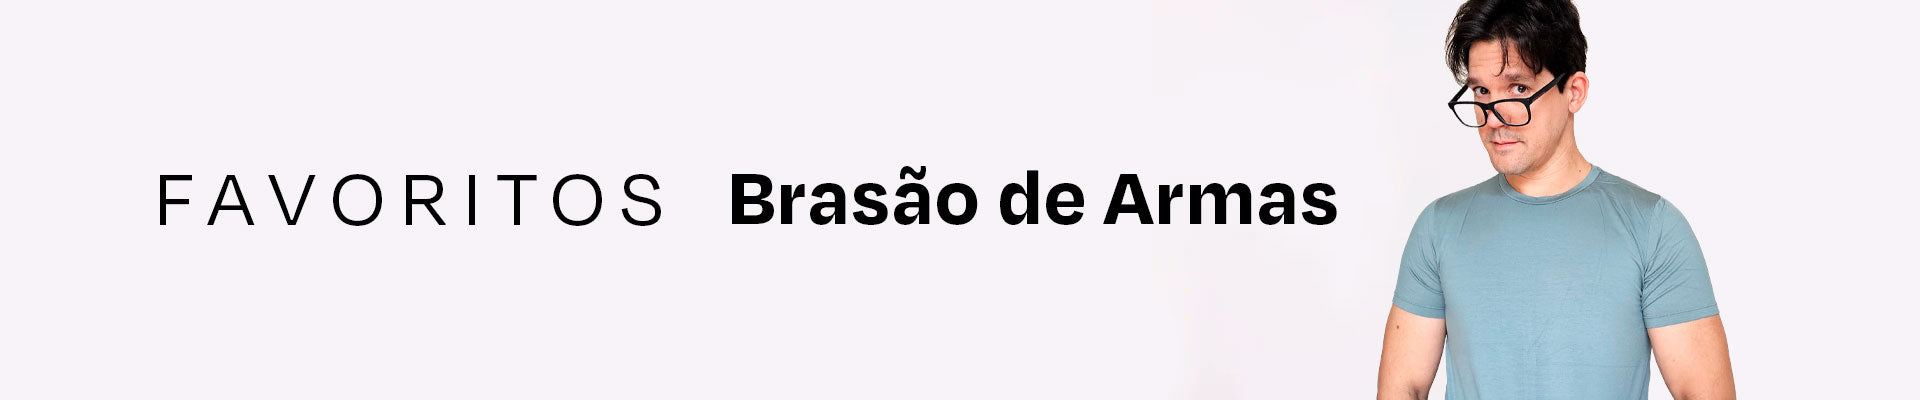 BRASÃO DE ARMAS